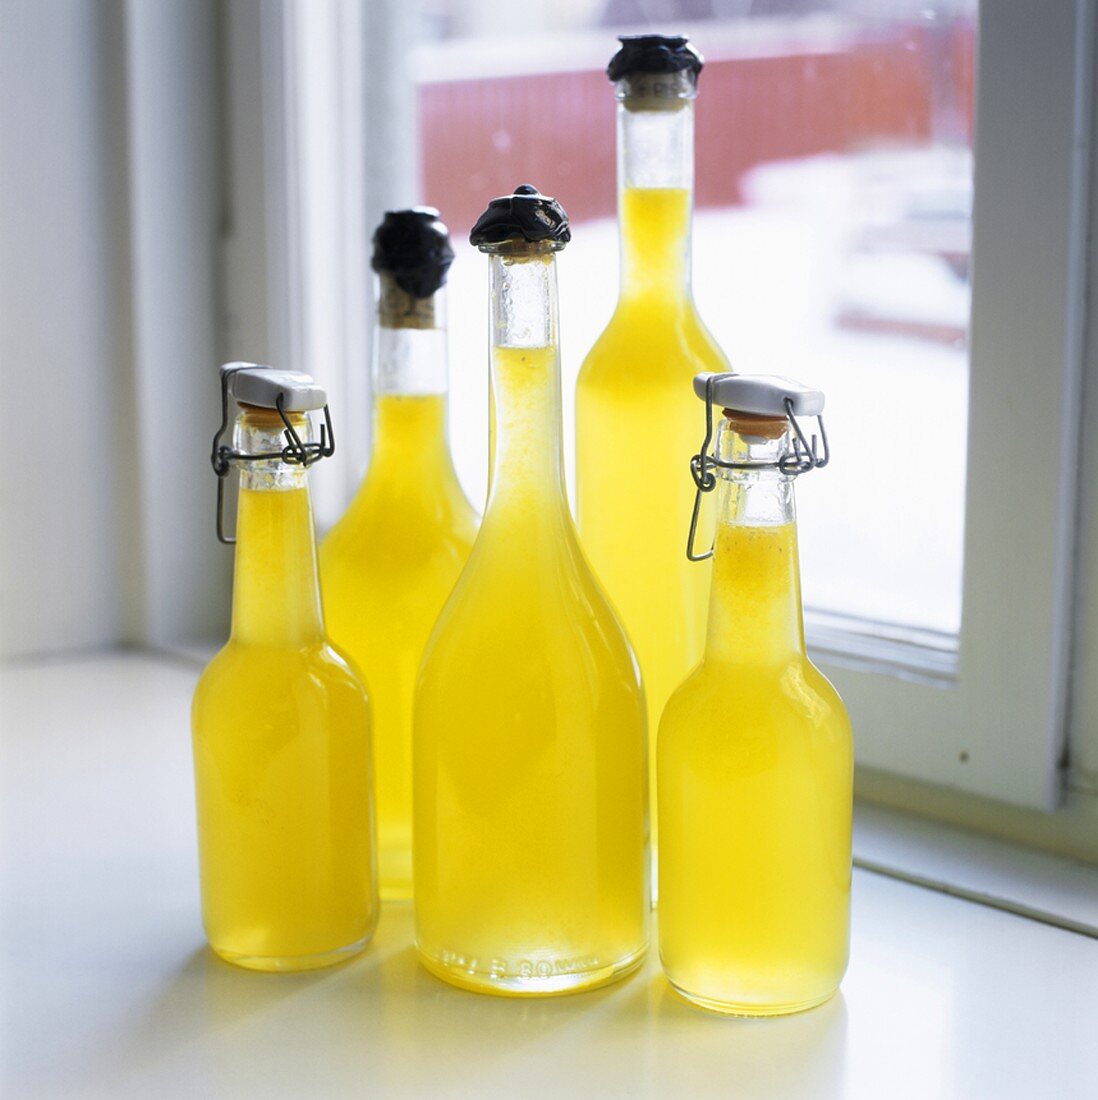 Home-made lemonade in several bottles